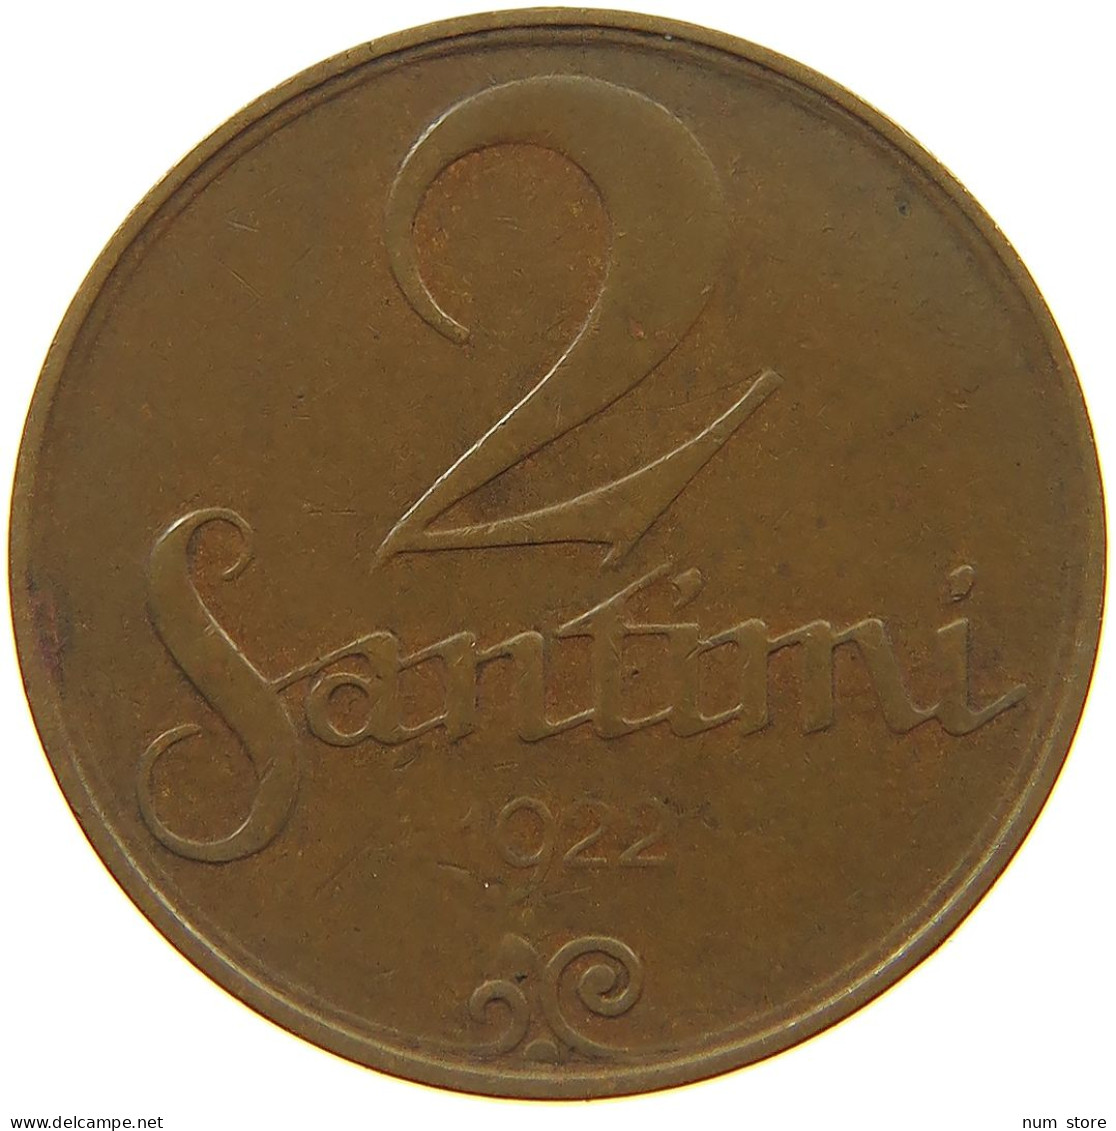 LATVIA 2 SANTIMI 1922  #c083 0413 - Letland